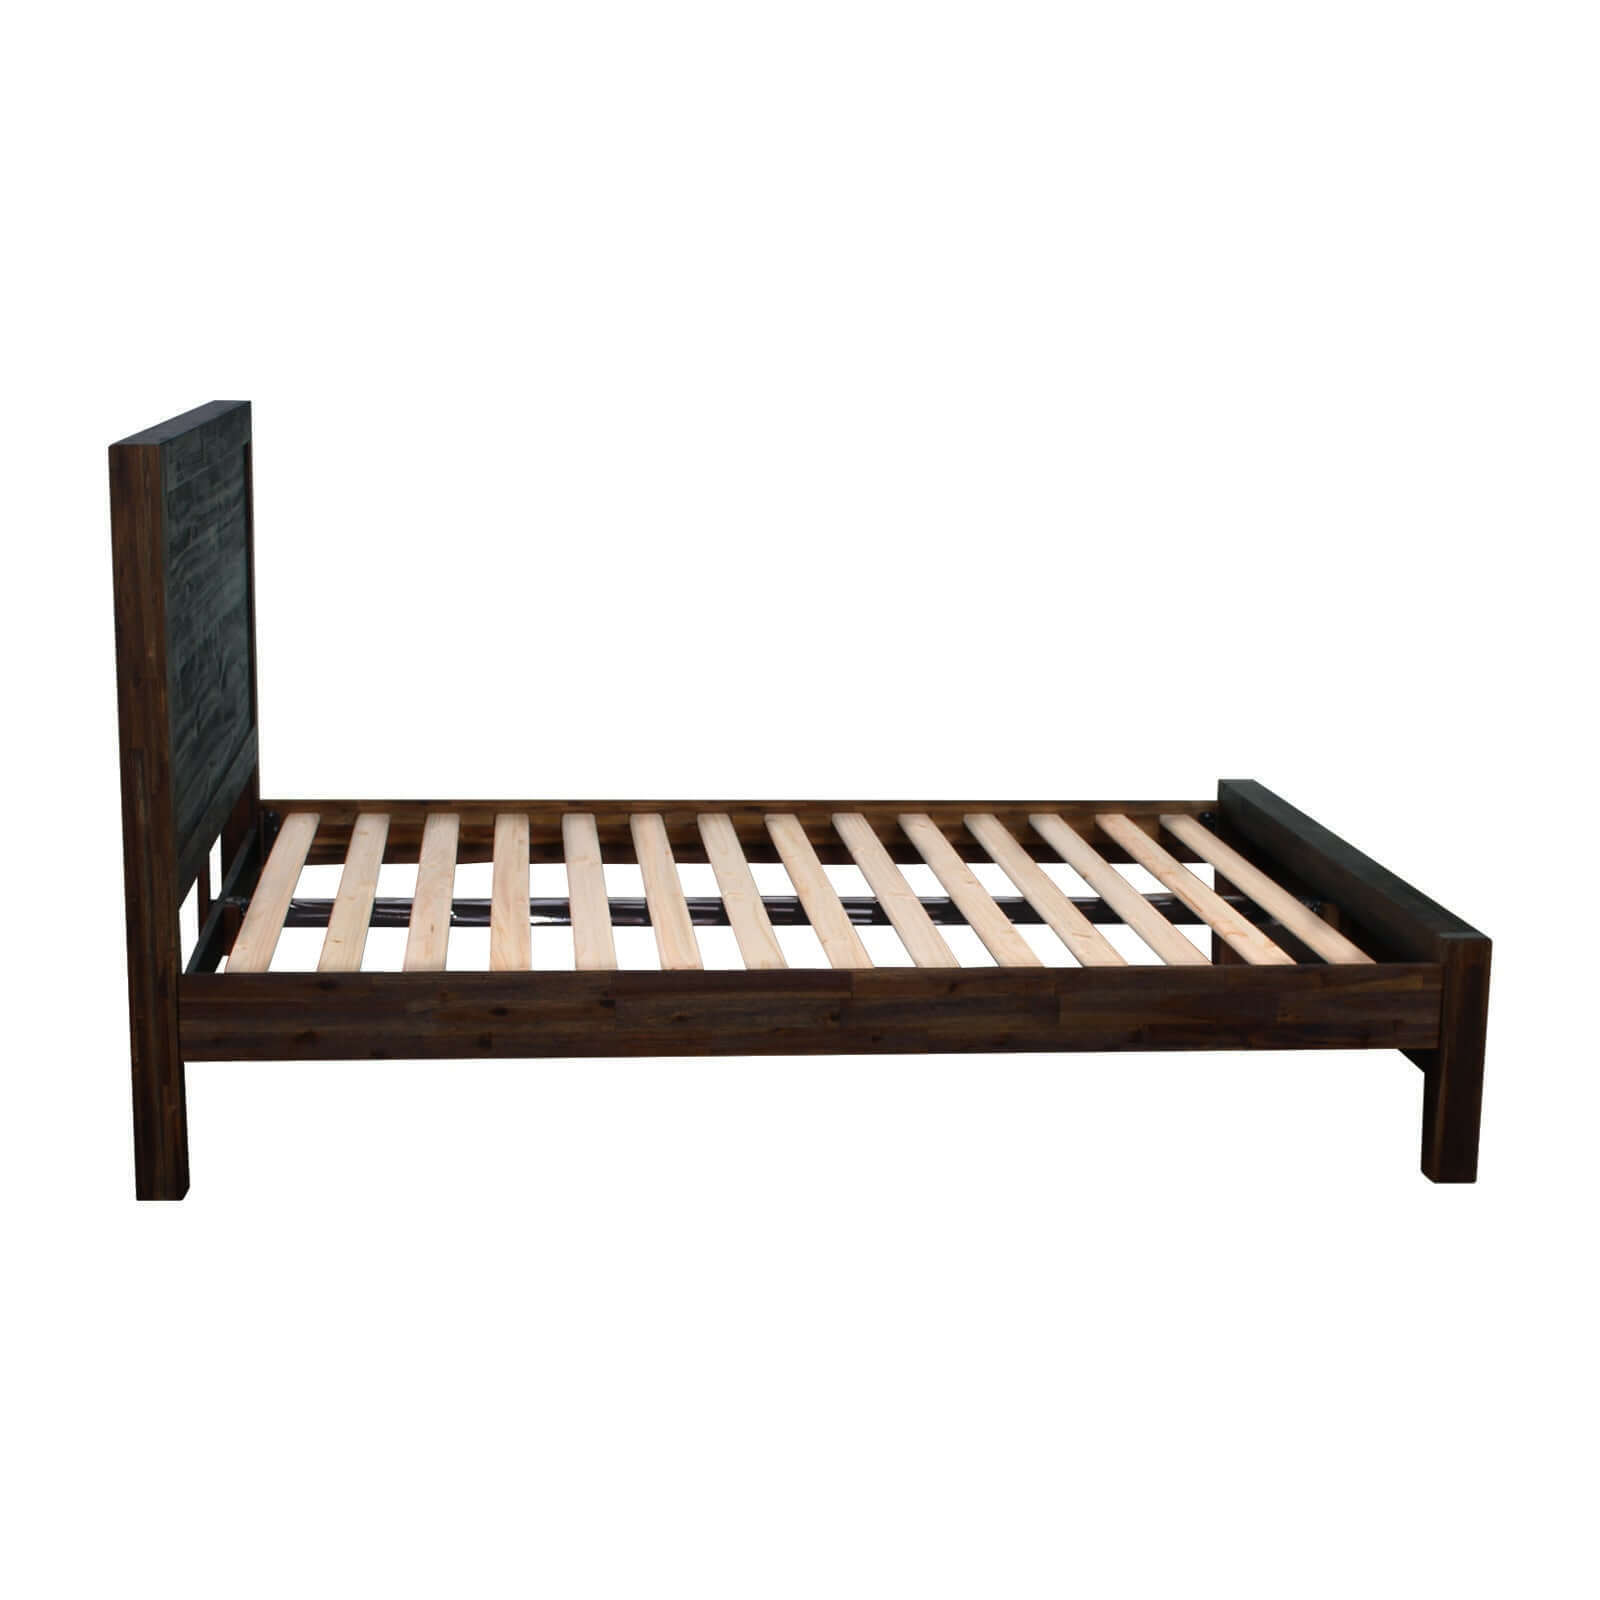 Buy 4 Piece Chocolate Color Wooden Bedroom Suite -Upinteriors